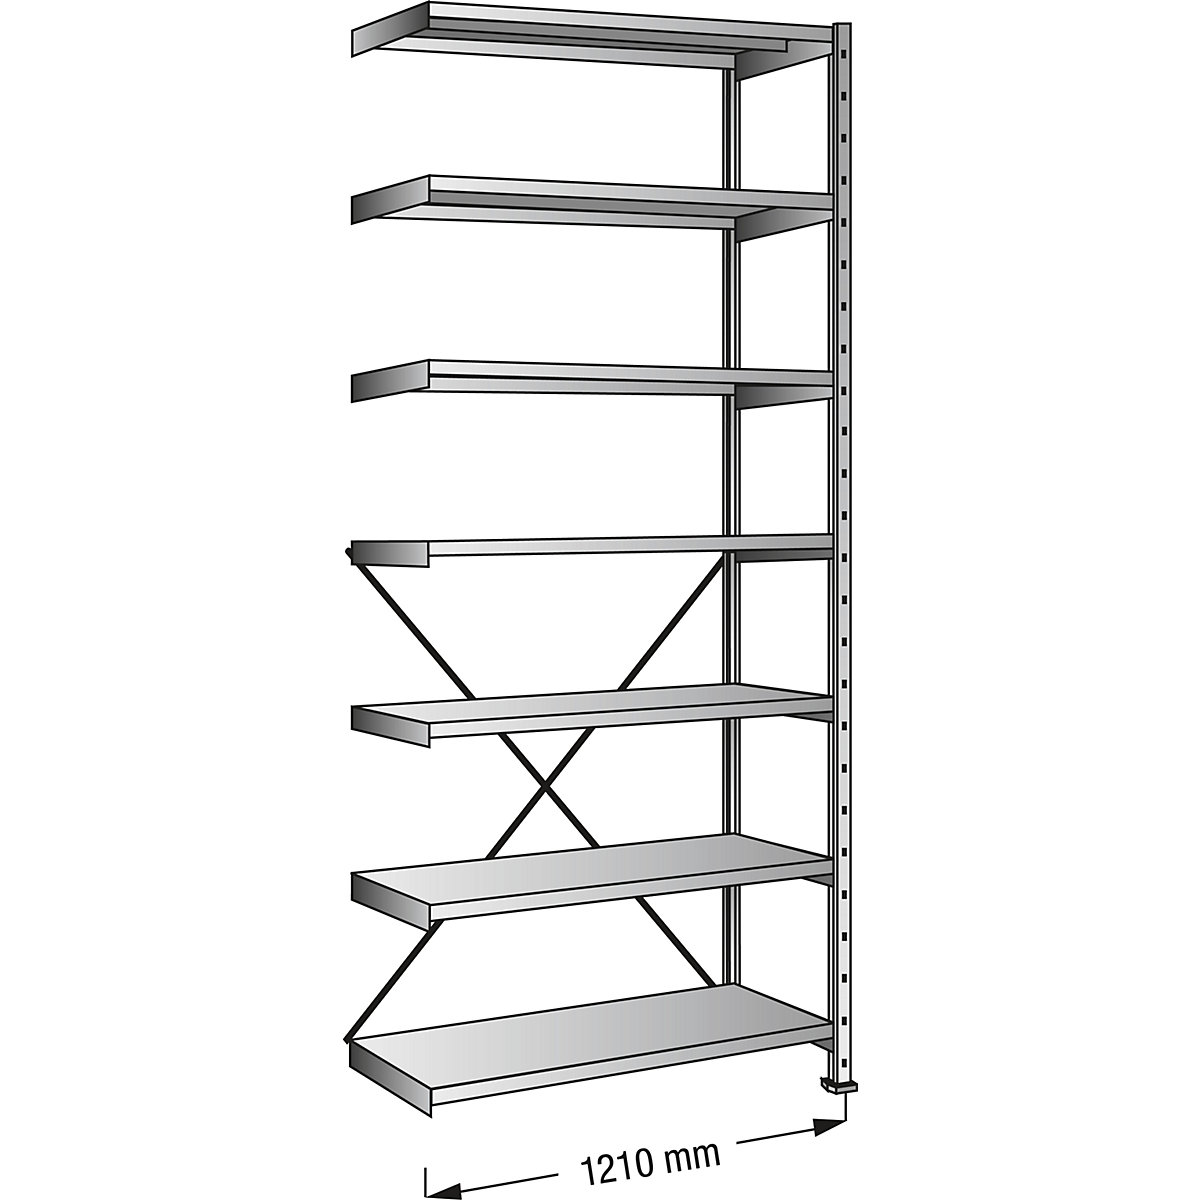 Boltless shelving unit, zinc plated, 7 shelves, height 2640 mm, shelf width 1200 mm, depth 400 mm, extension shelf unit